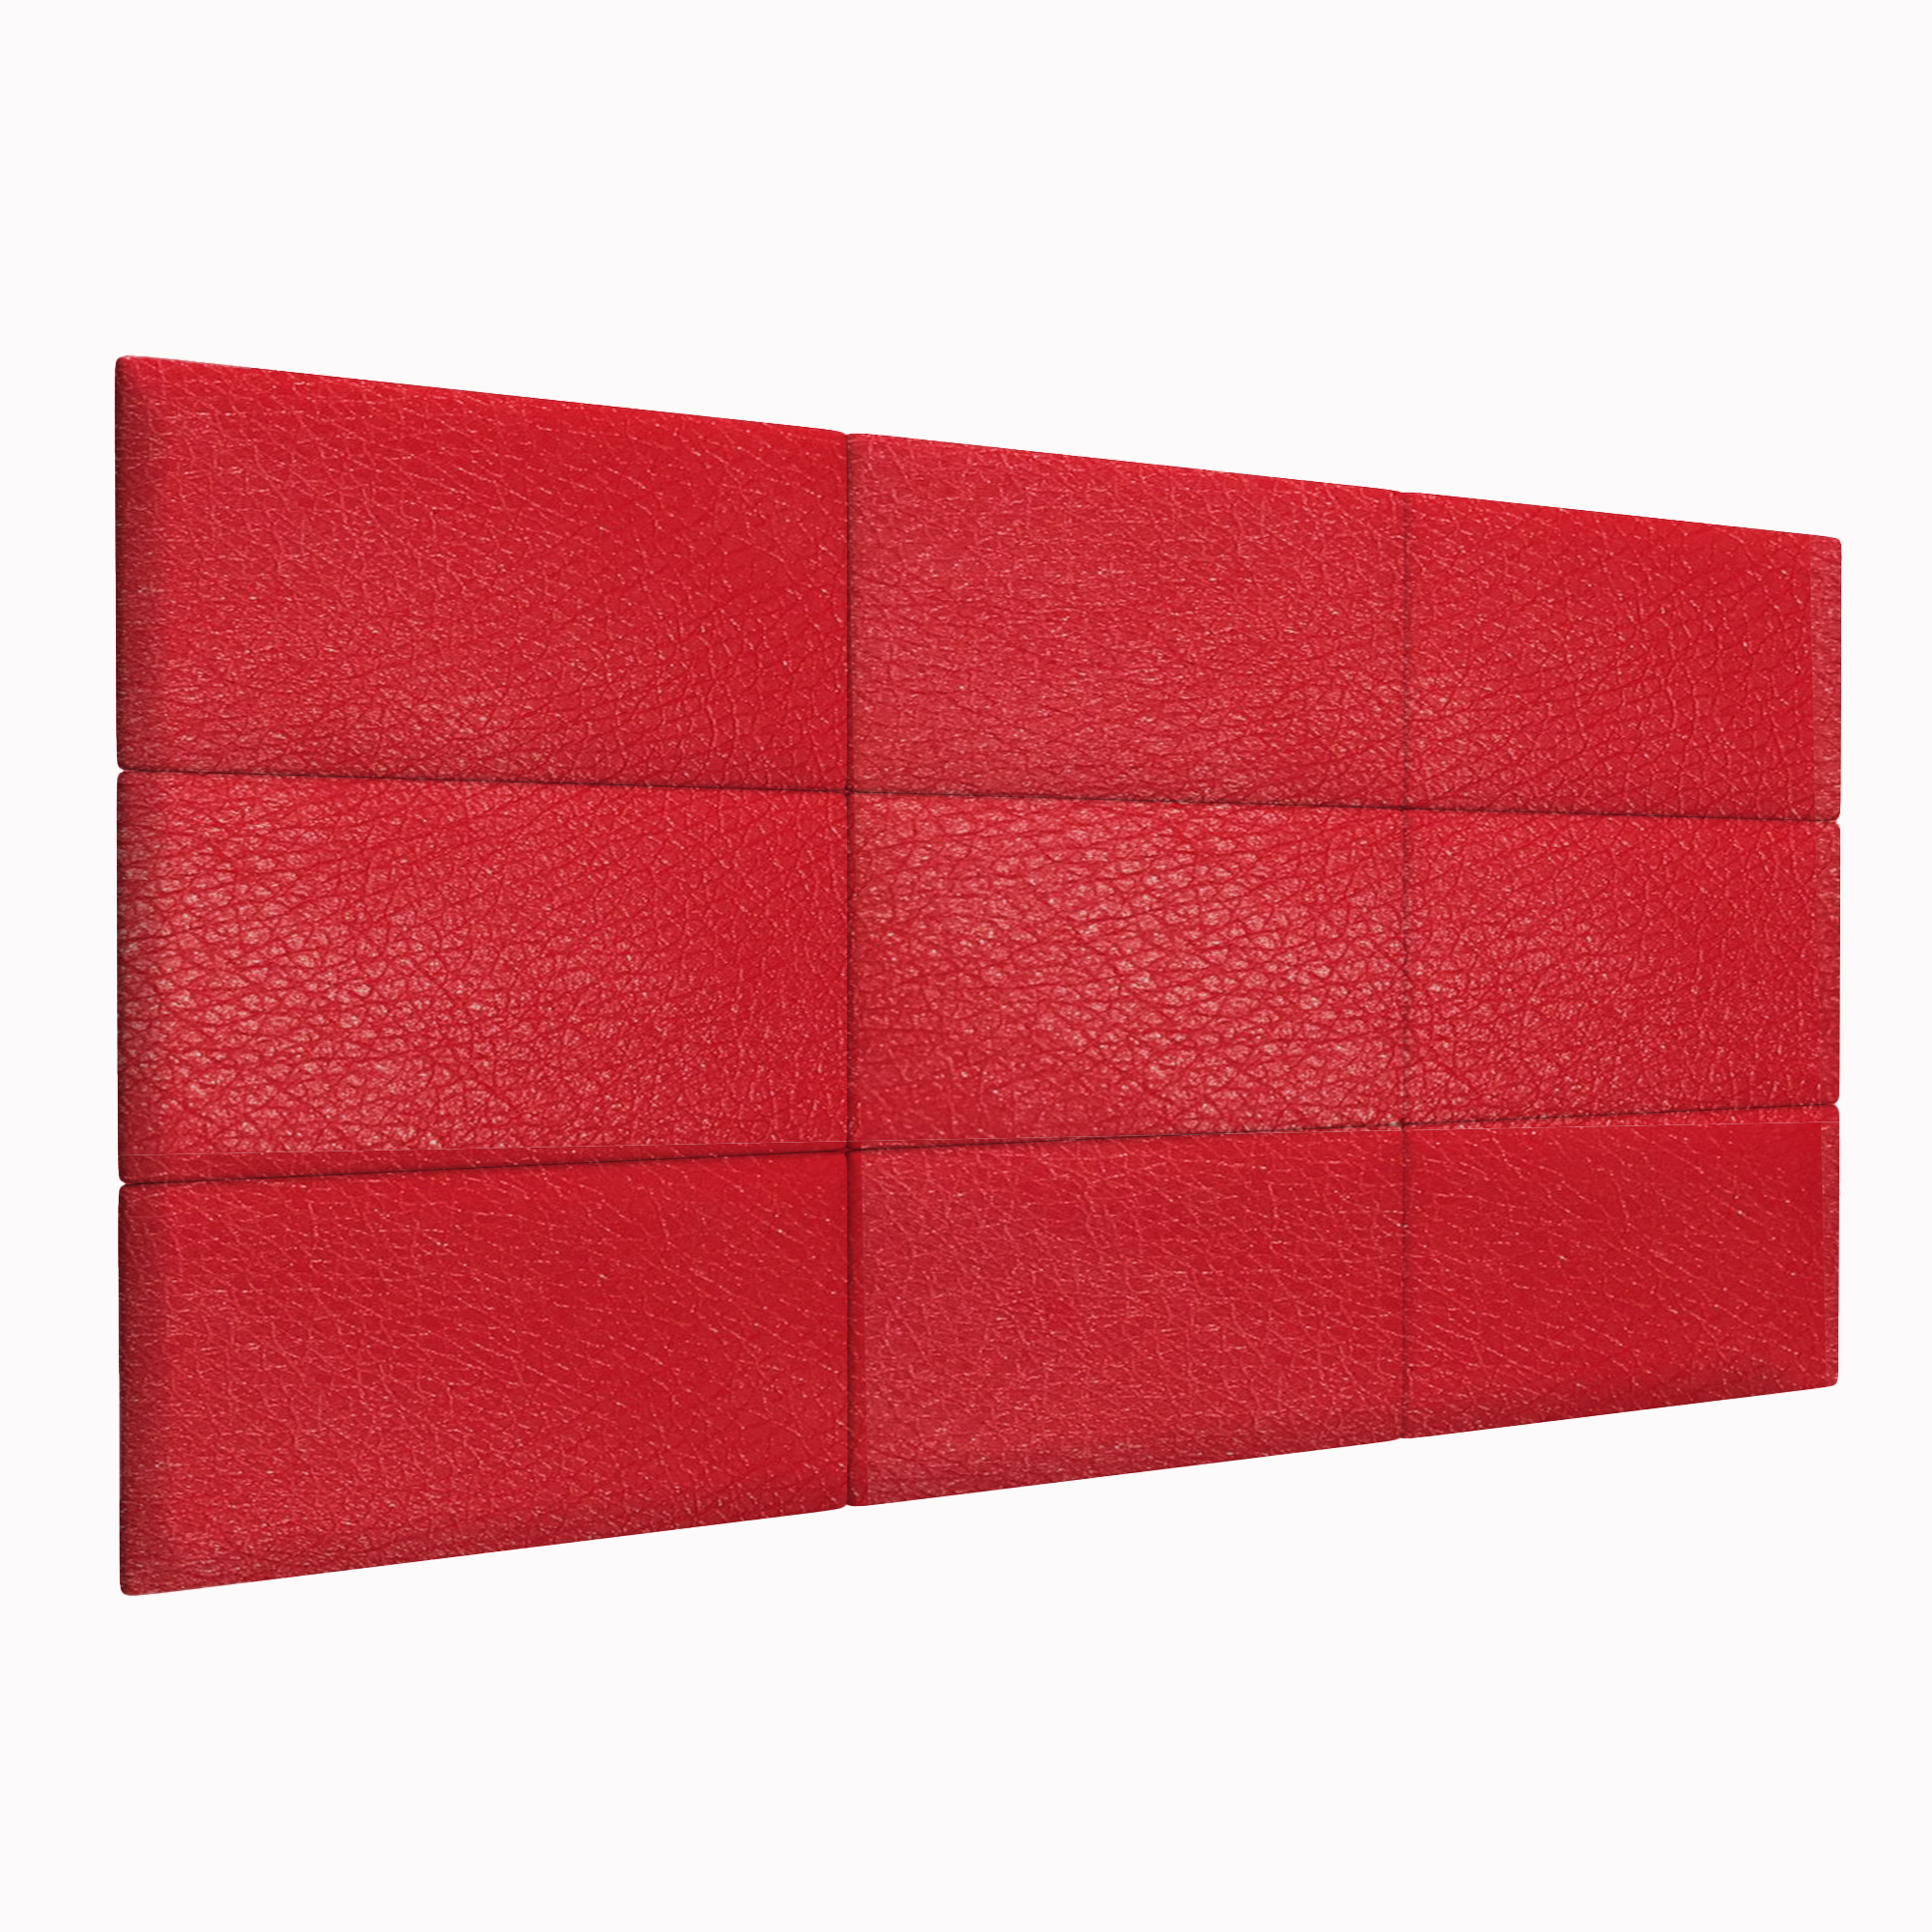 Шумо звукоизоляционные мягкие панели Eco Leather Red 30х60 см 4 шт.